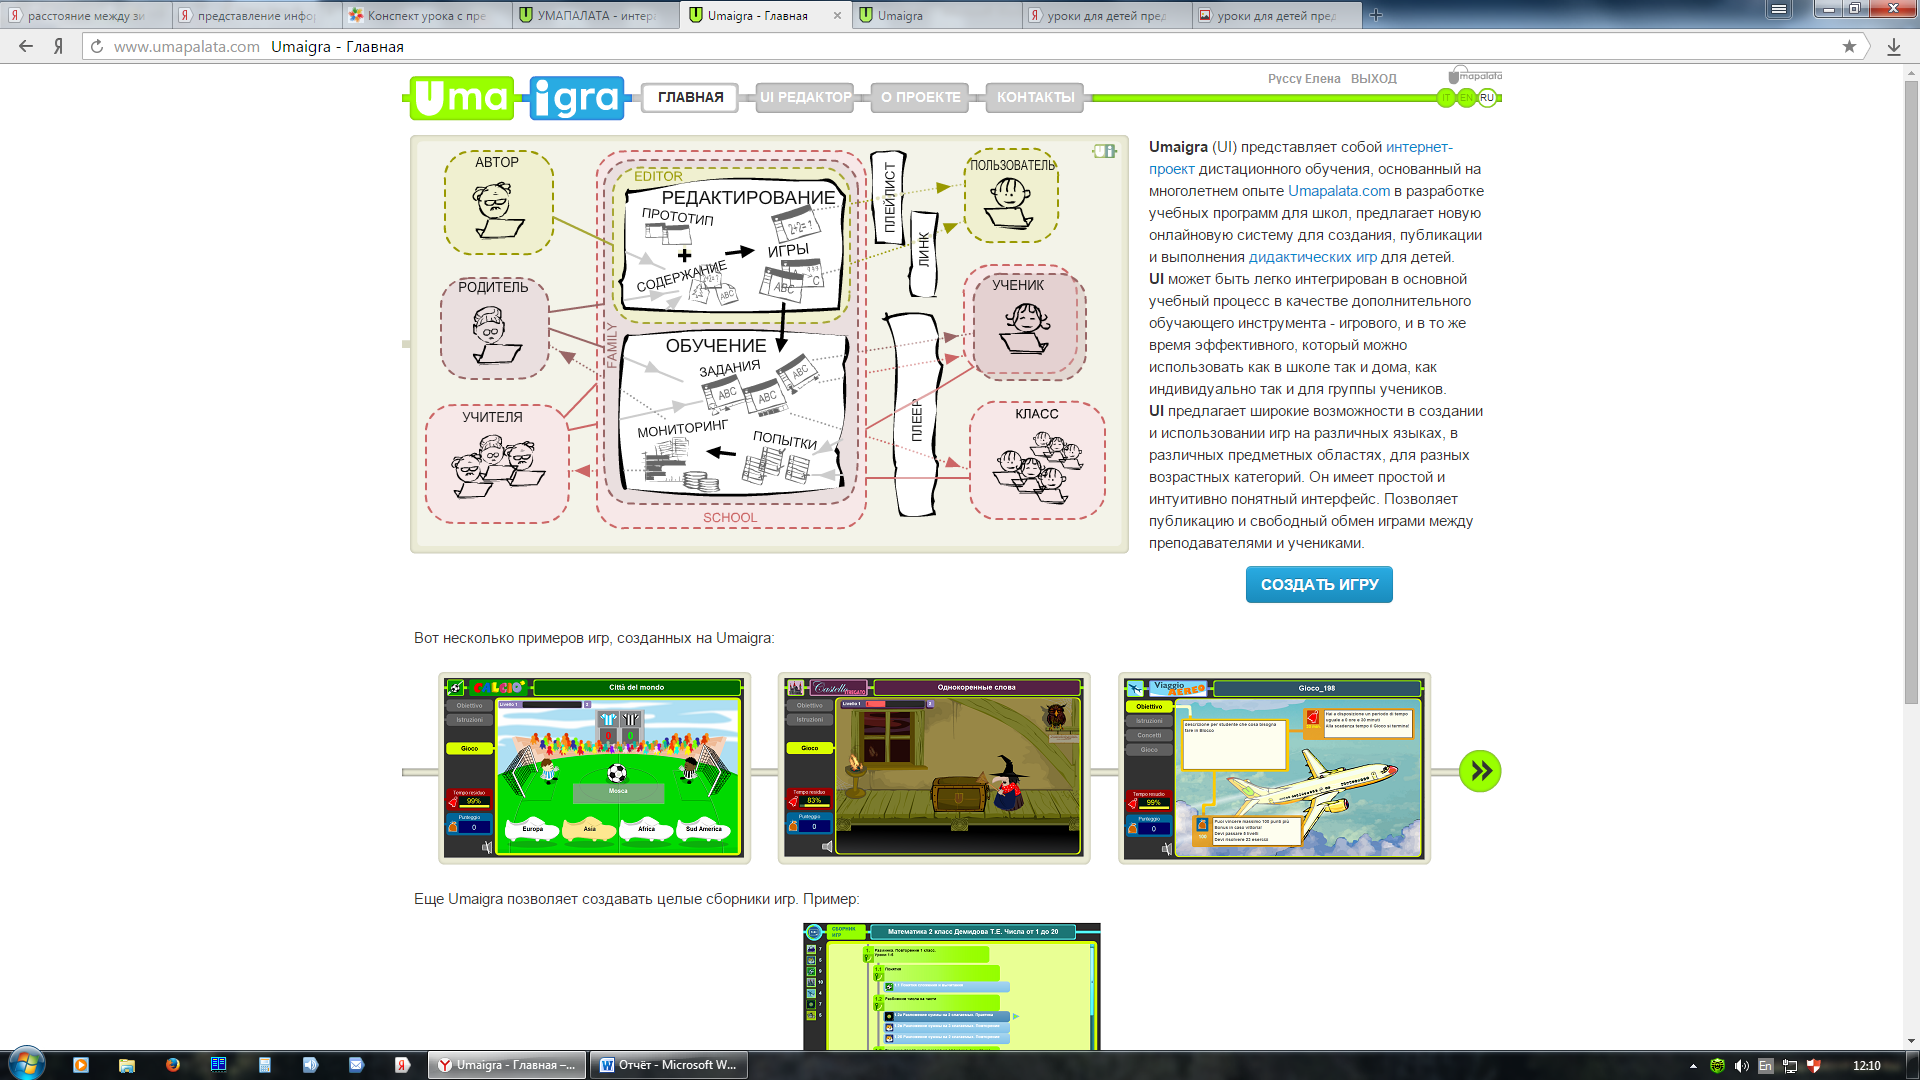 Разработка обучающей игры для начальных классов с помощью интерактивной среды umapalata